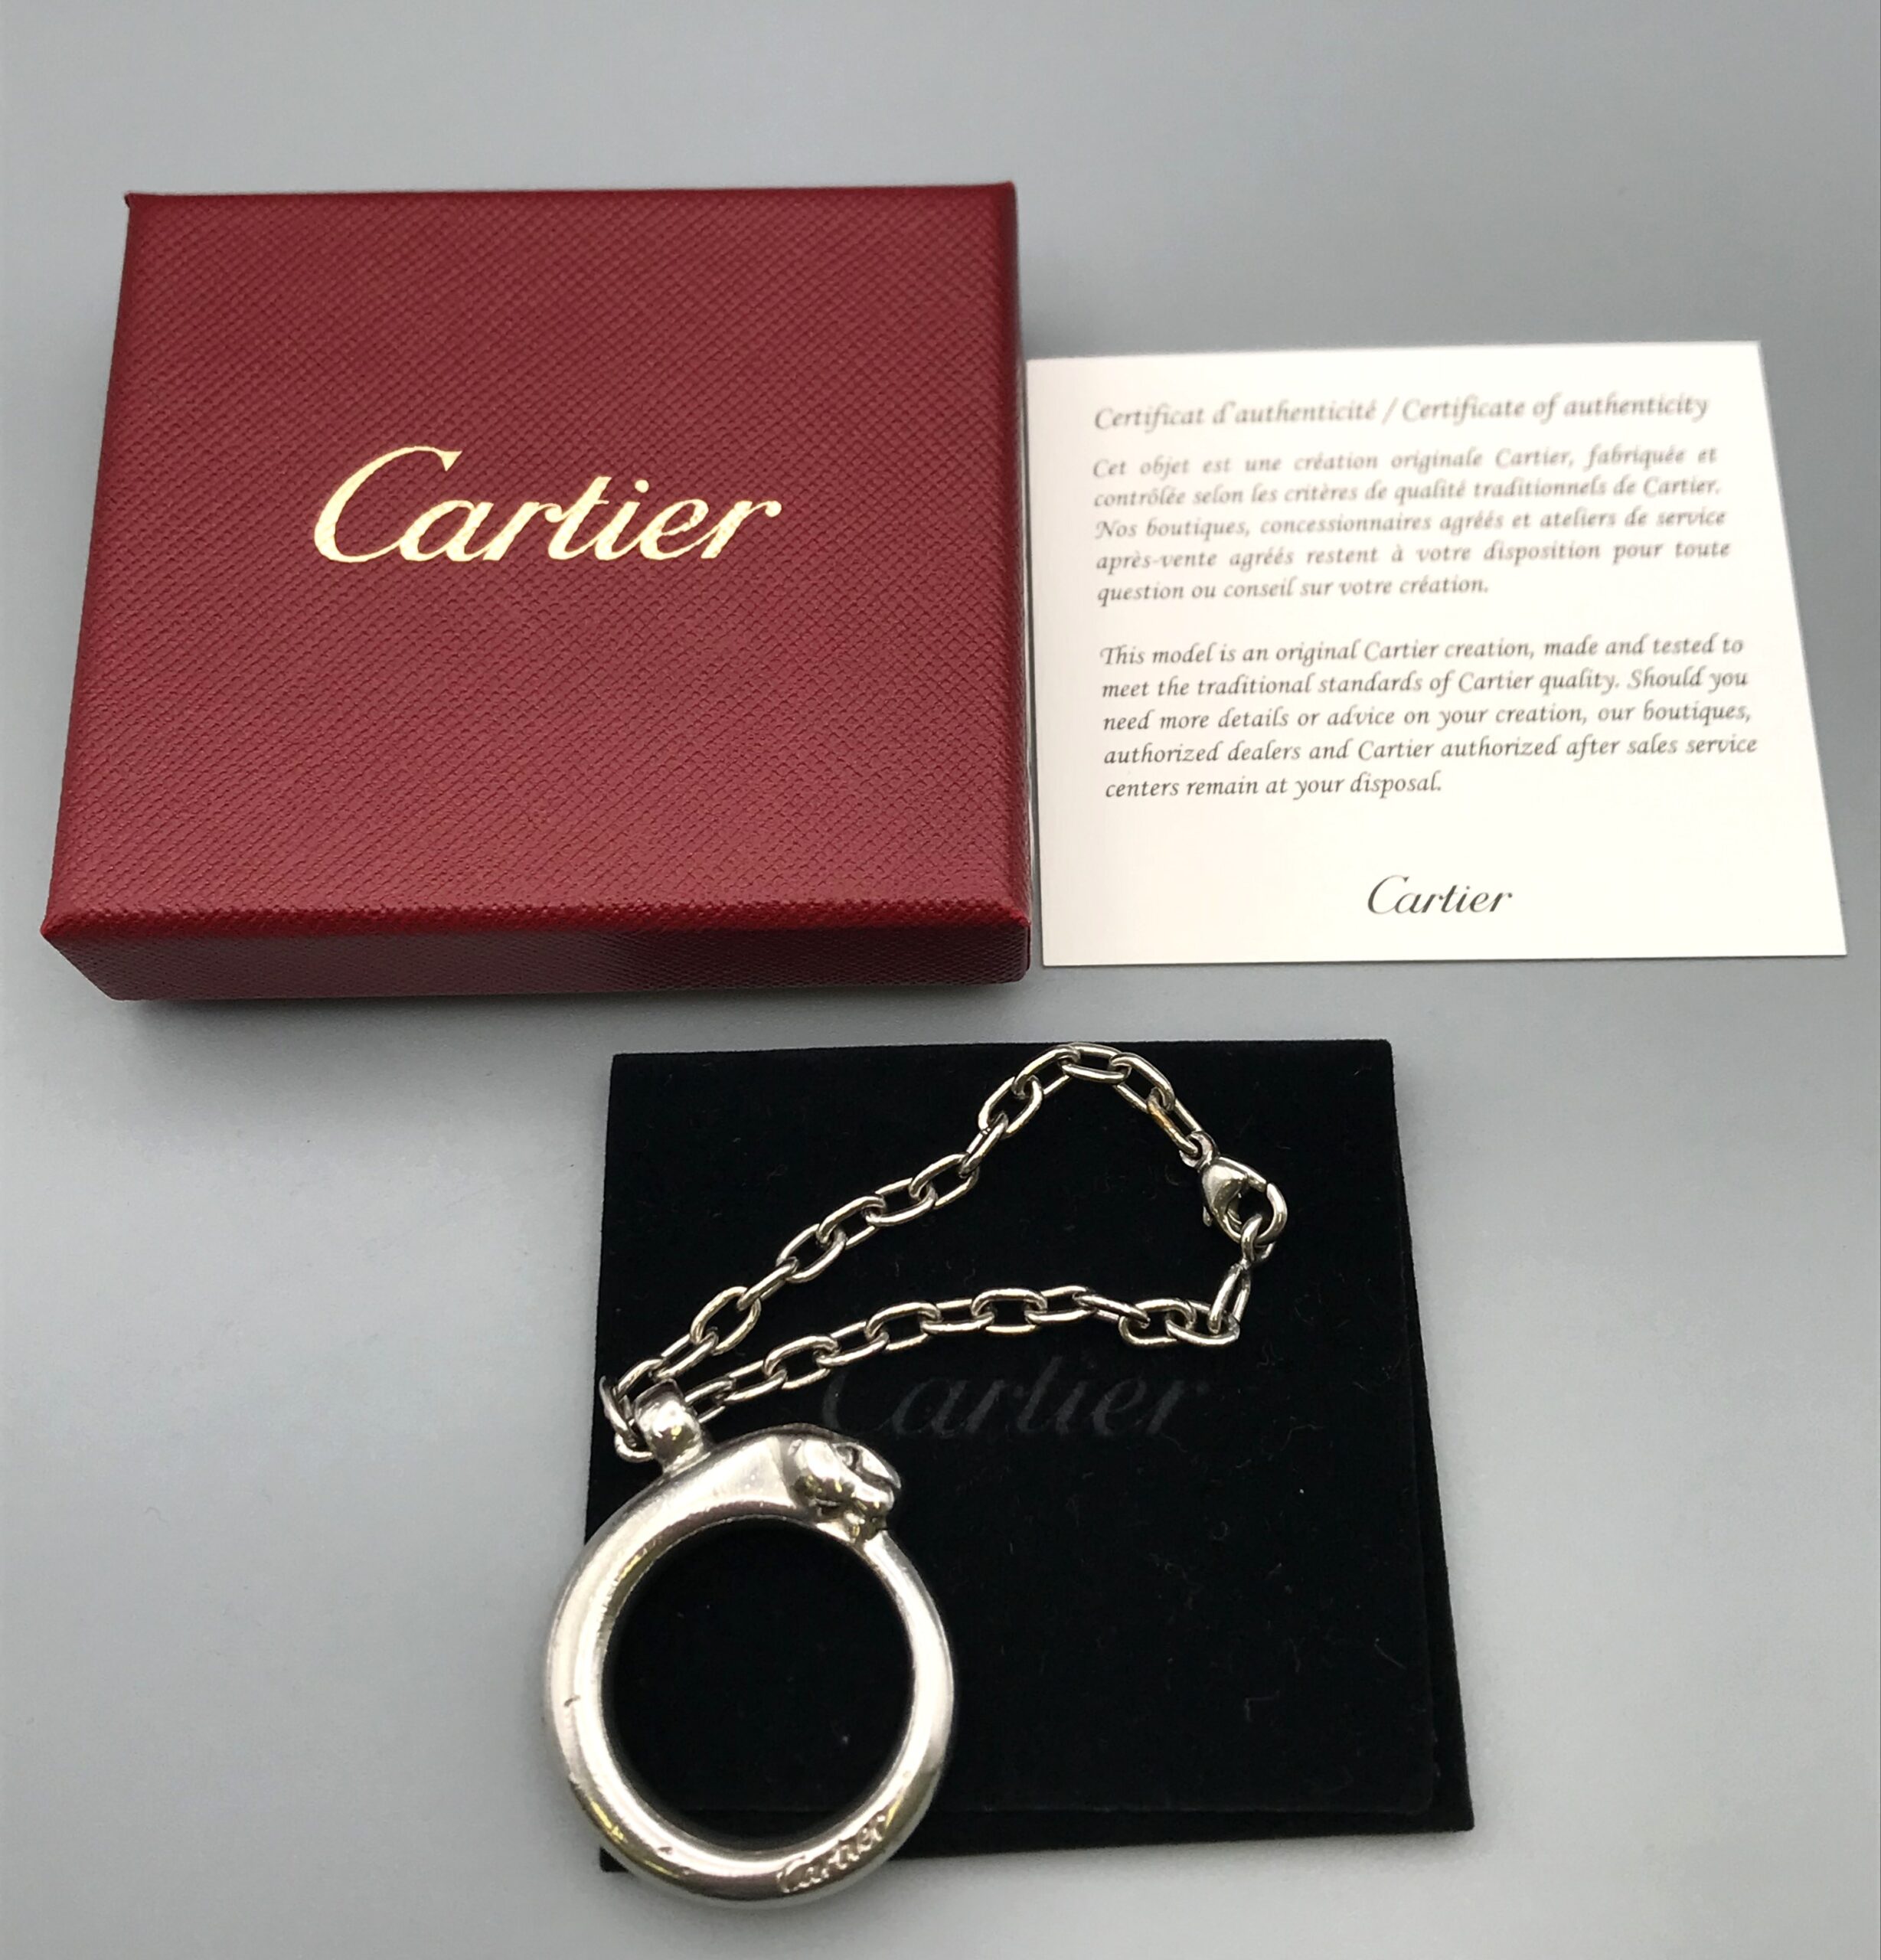 Cartierのキーホルダーを買取しました。